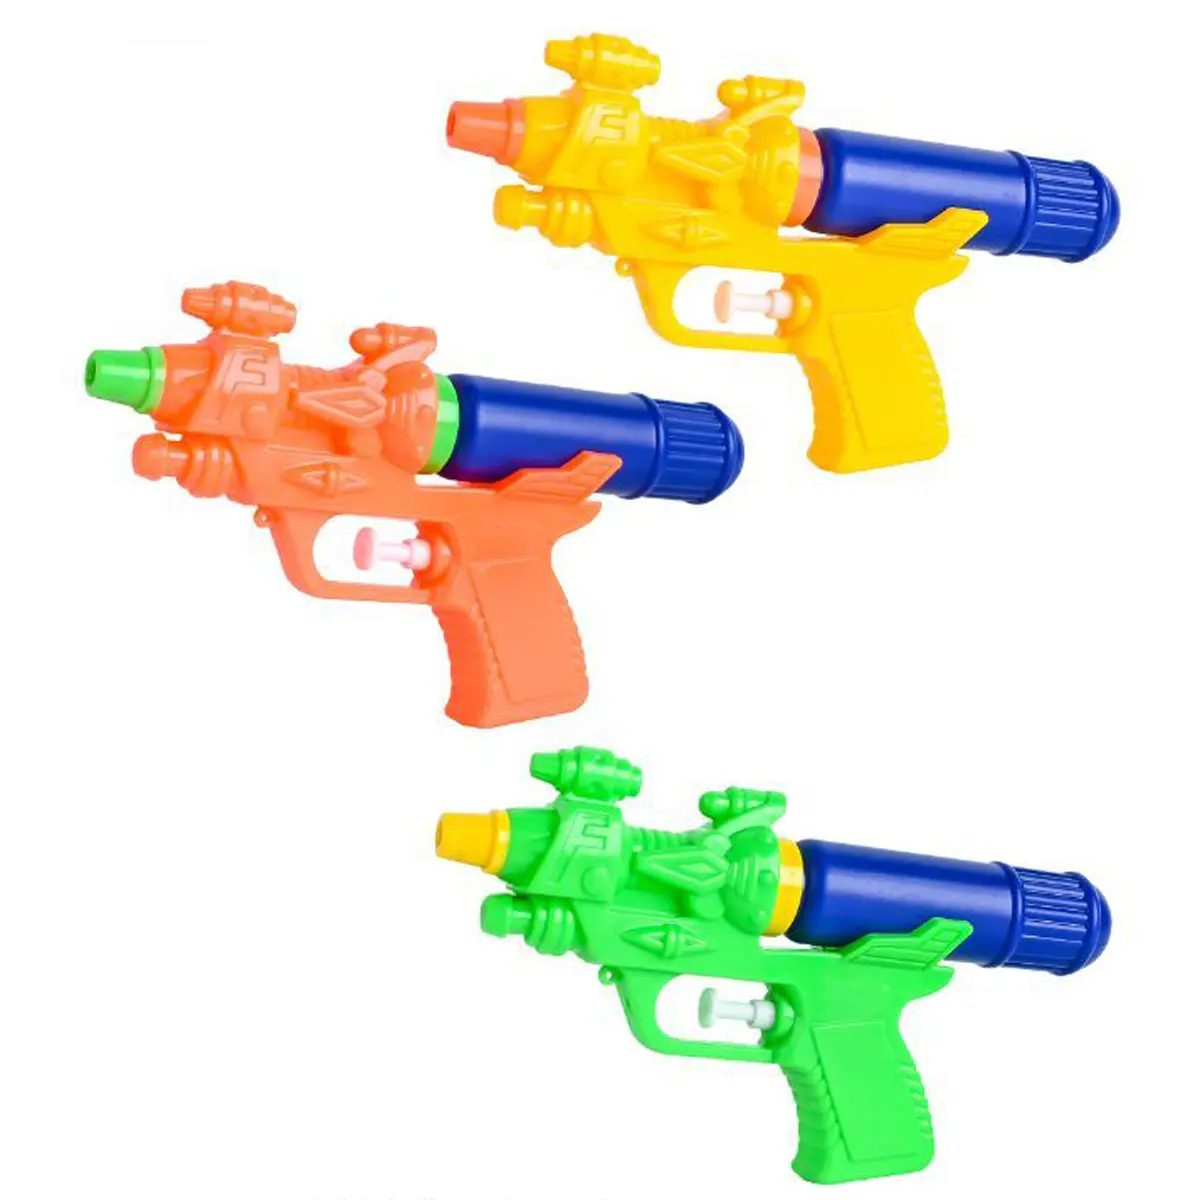 منتجات جديدة شعبية في الهواء الطلق اطلاق النار لعبة شاطئ اللعب رخيصة مجموعة لعبة مسدس مياه للأطفال